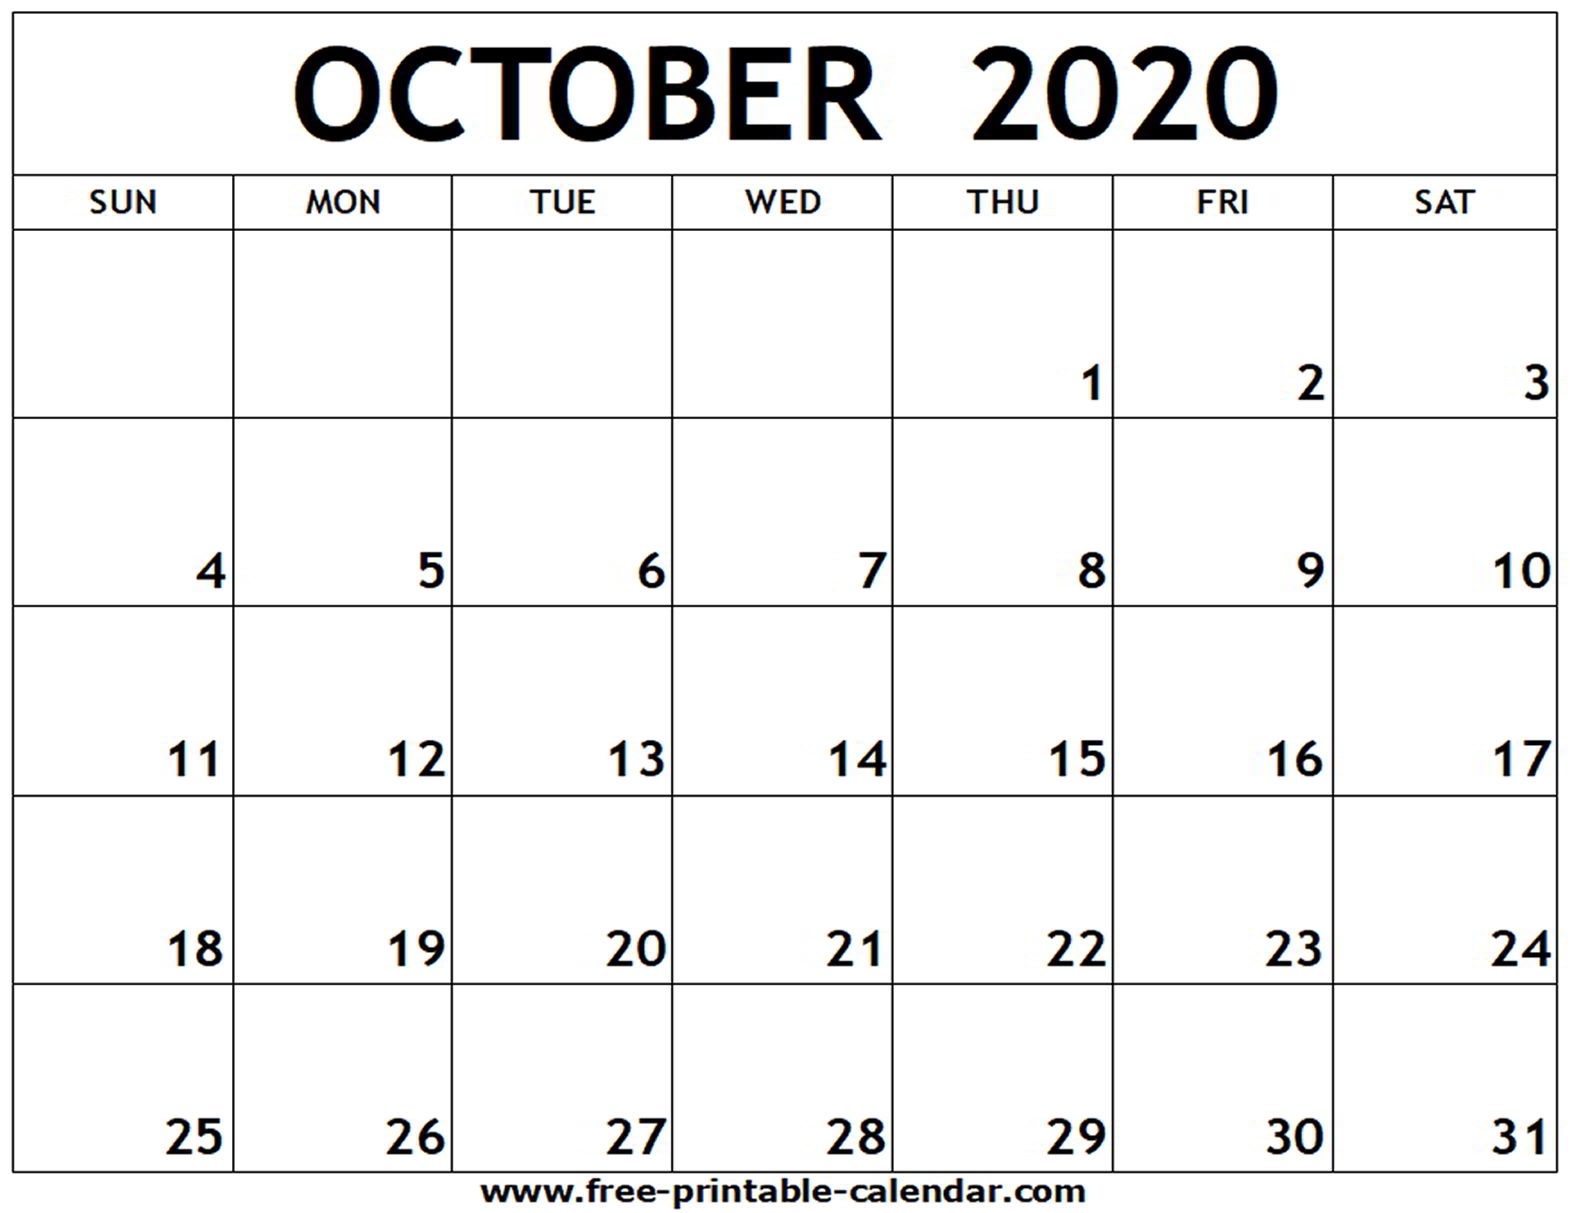 October 2020 Printable Calendar - Free-Printable-Calendar